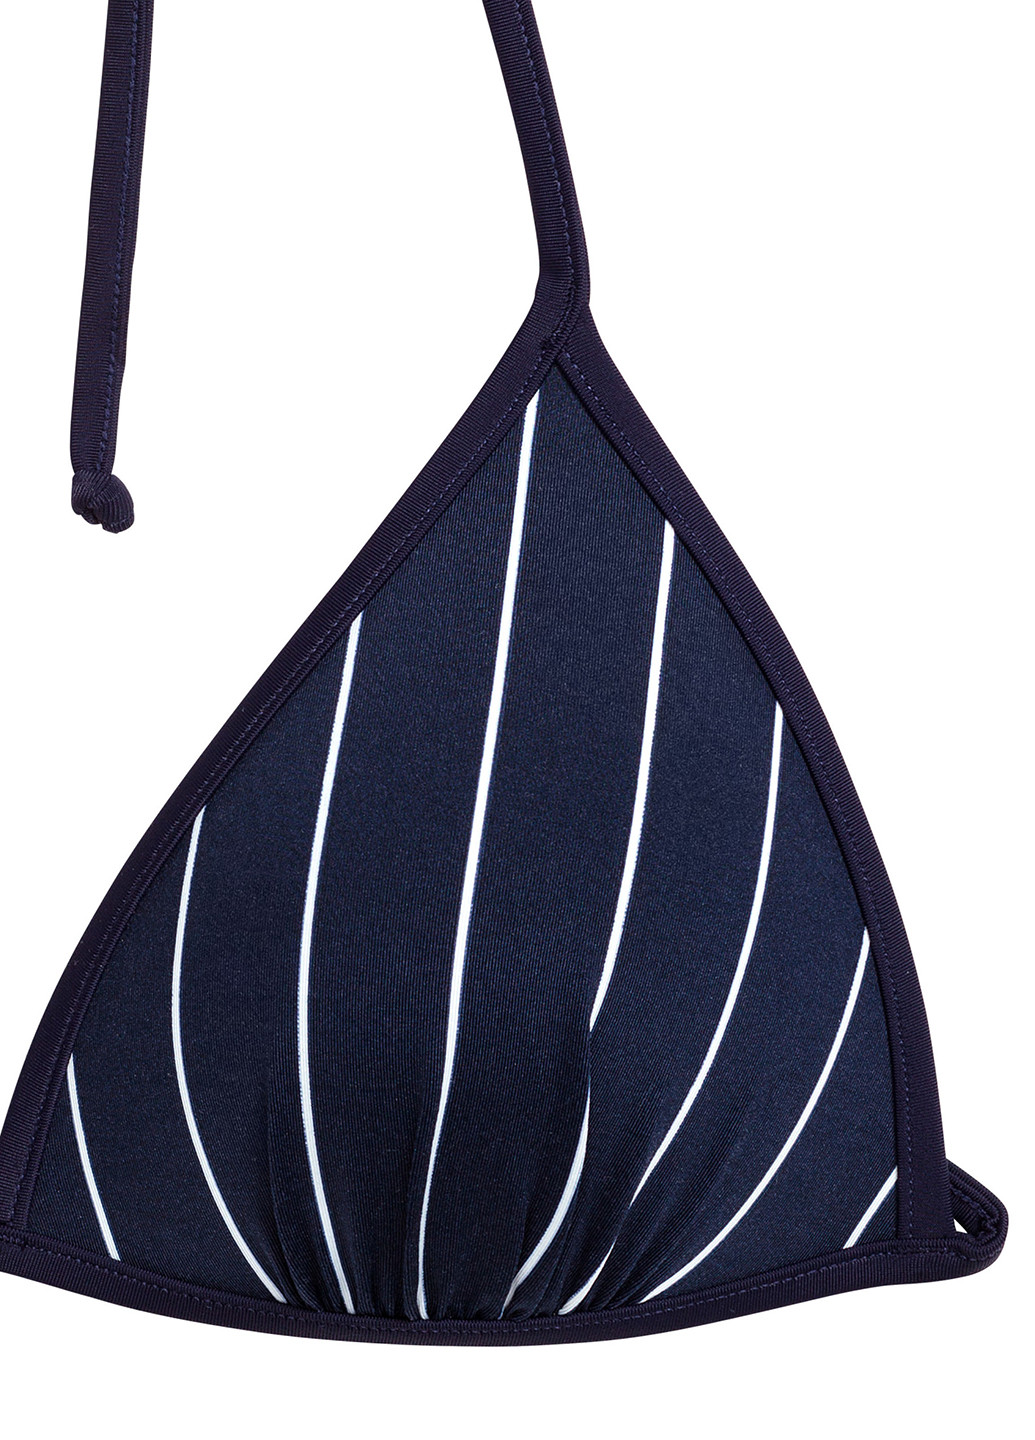 Купальный лиф H&M бикини полоска тёмно-синий пляжный